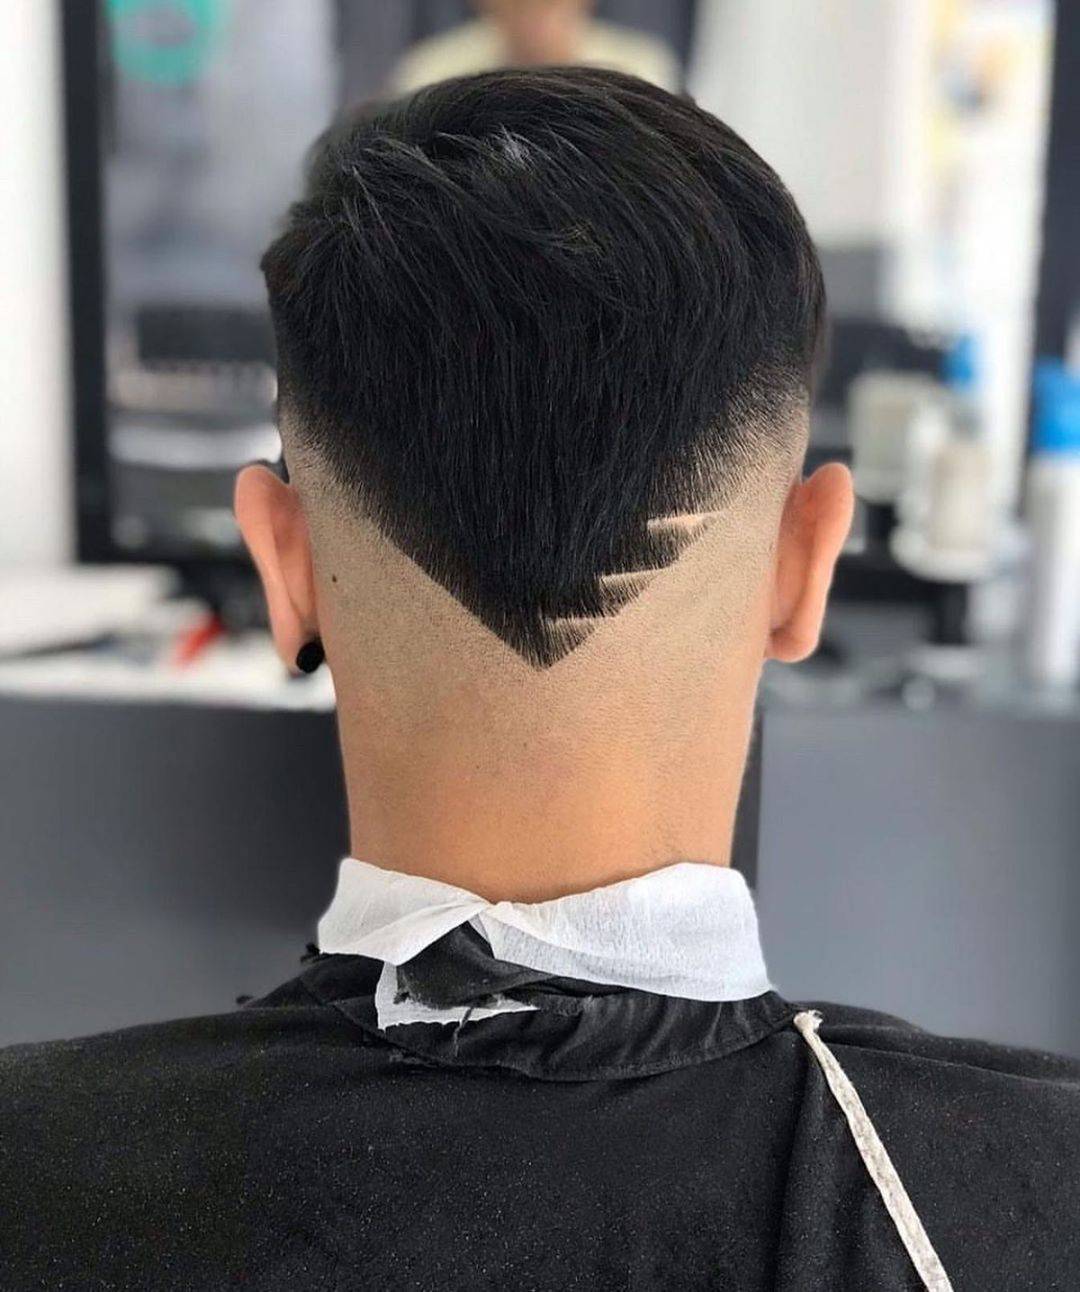 男士发型其实也可以剪出一些造型的,可以在后脑勺上边修剪一个三角形